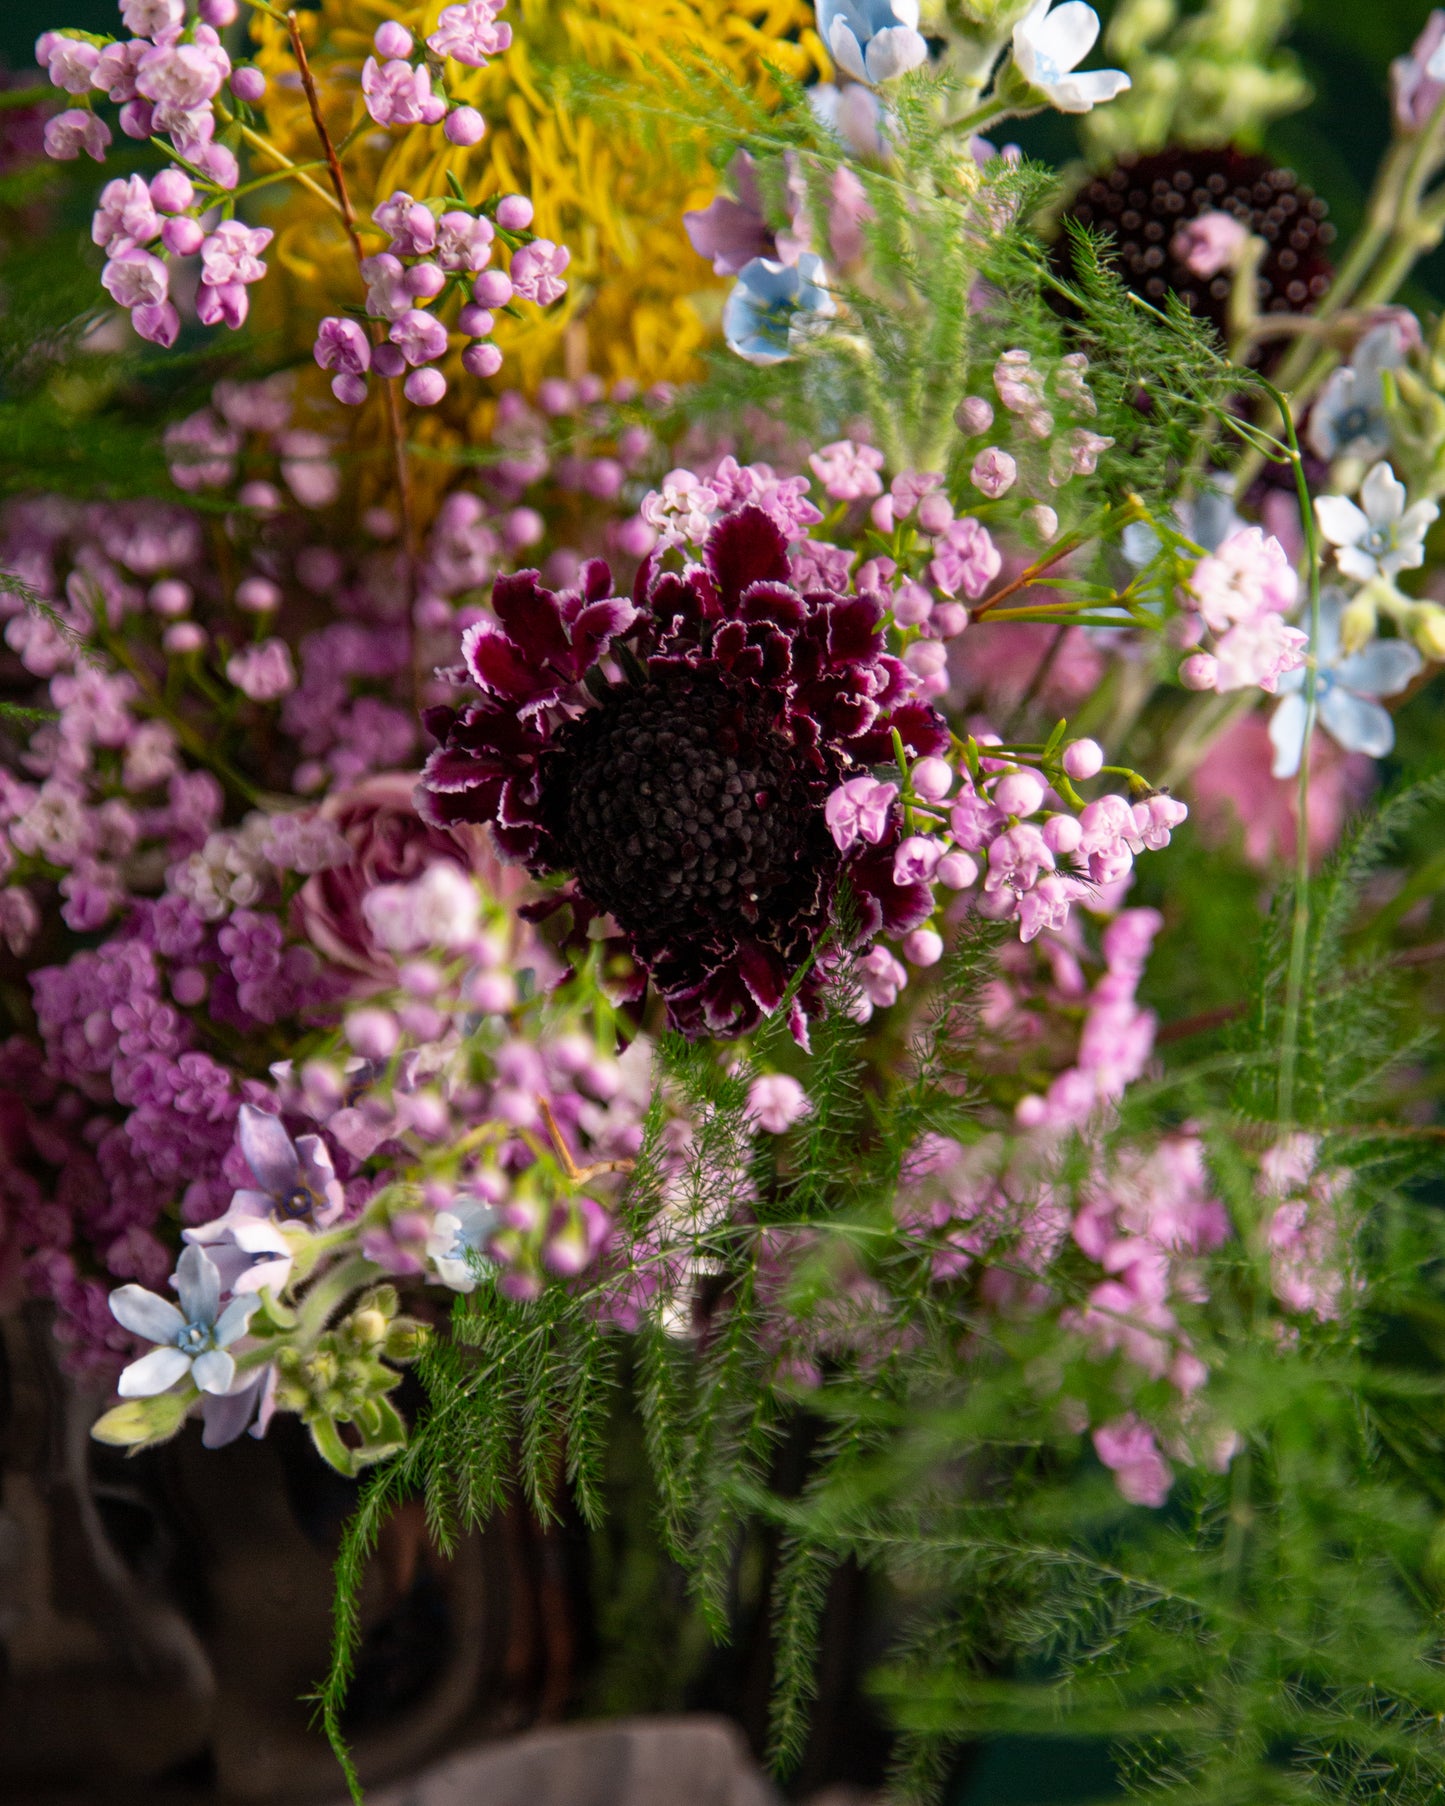 Flower arrangement "Green spider"